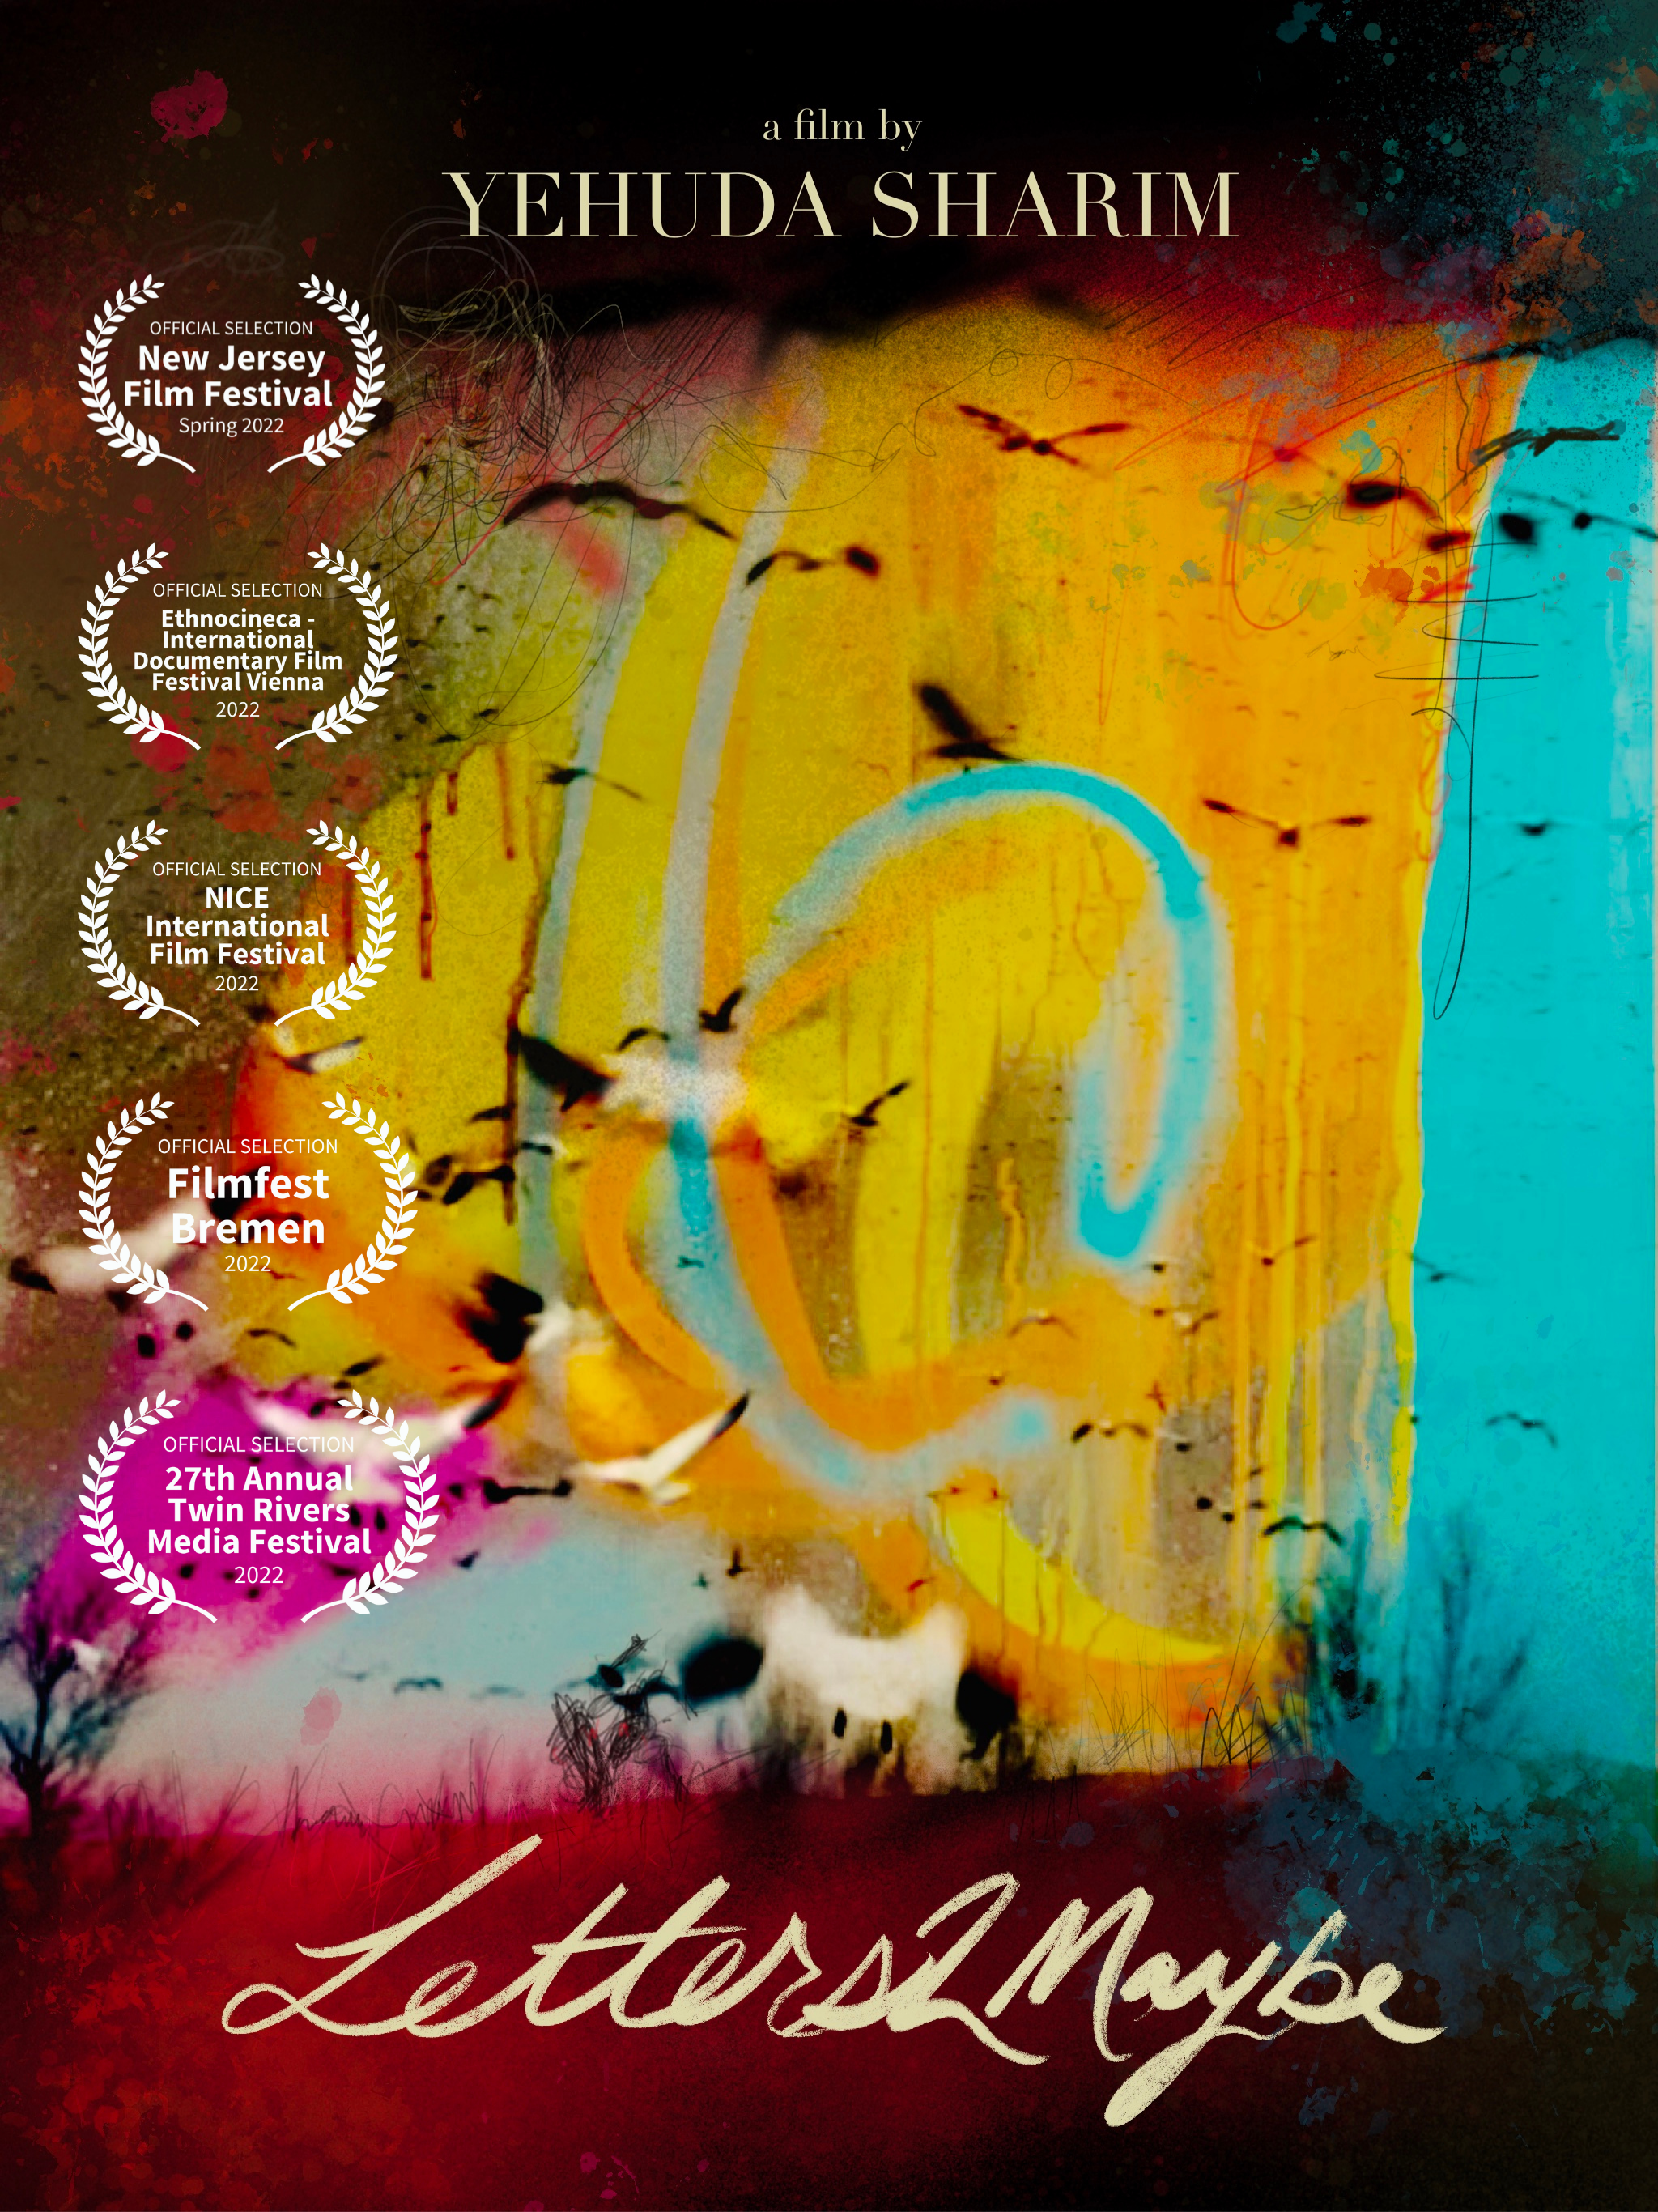 Ein Plakat für den Film von Yehuda Sharim "Briefe2Vielleicht" ist in diesem Bild zu sehen.